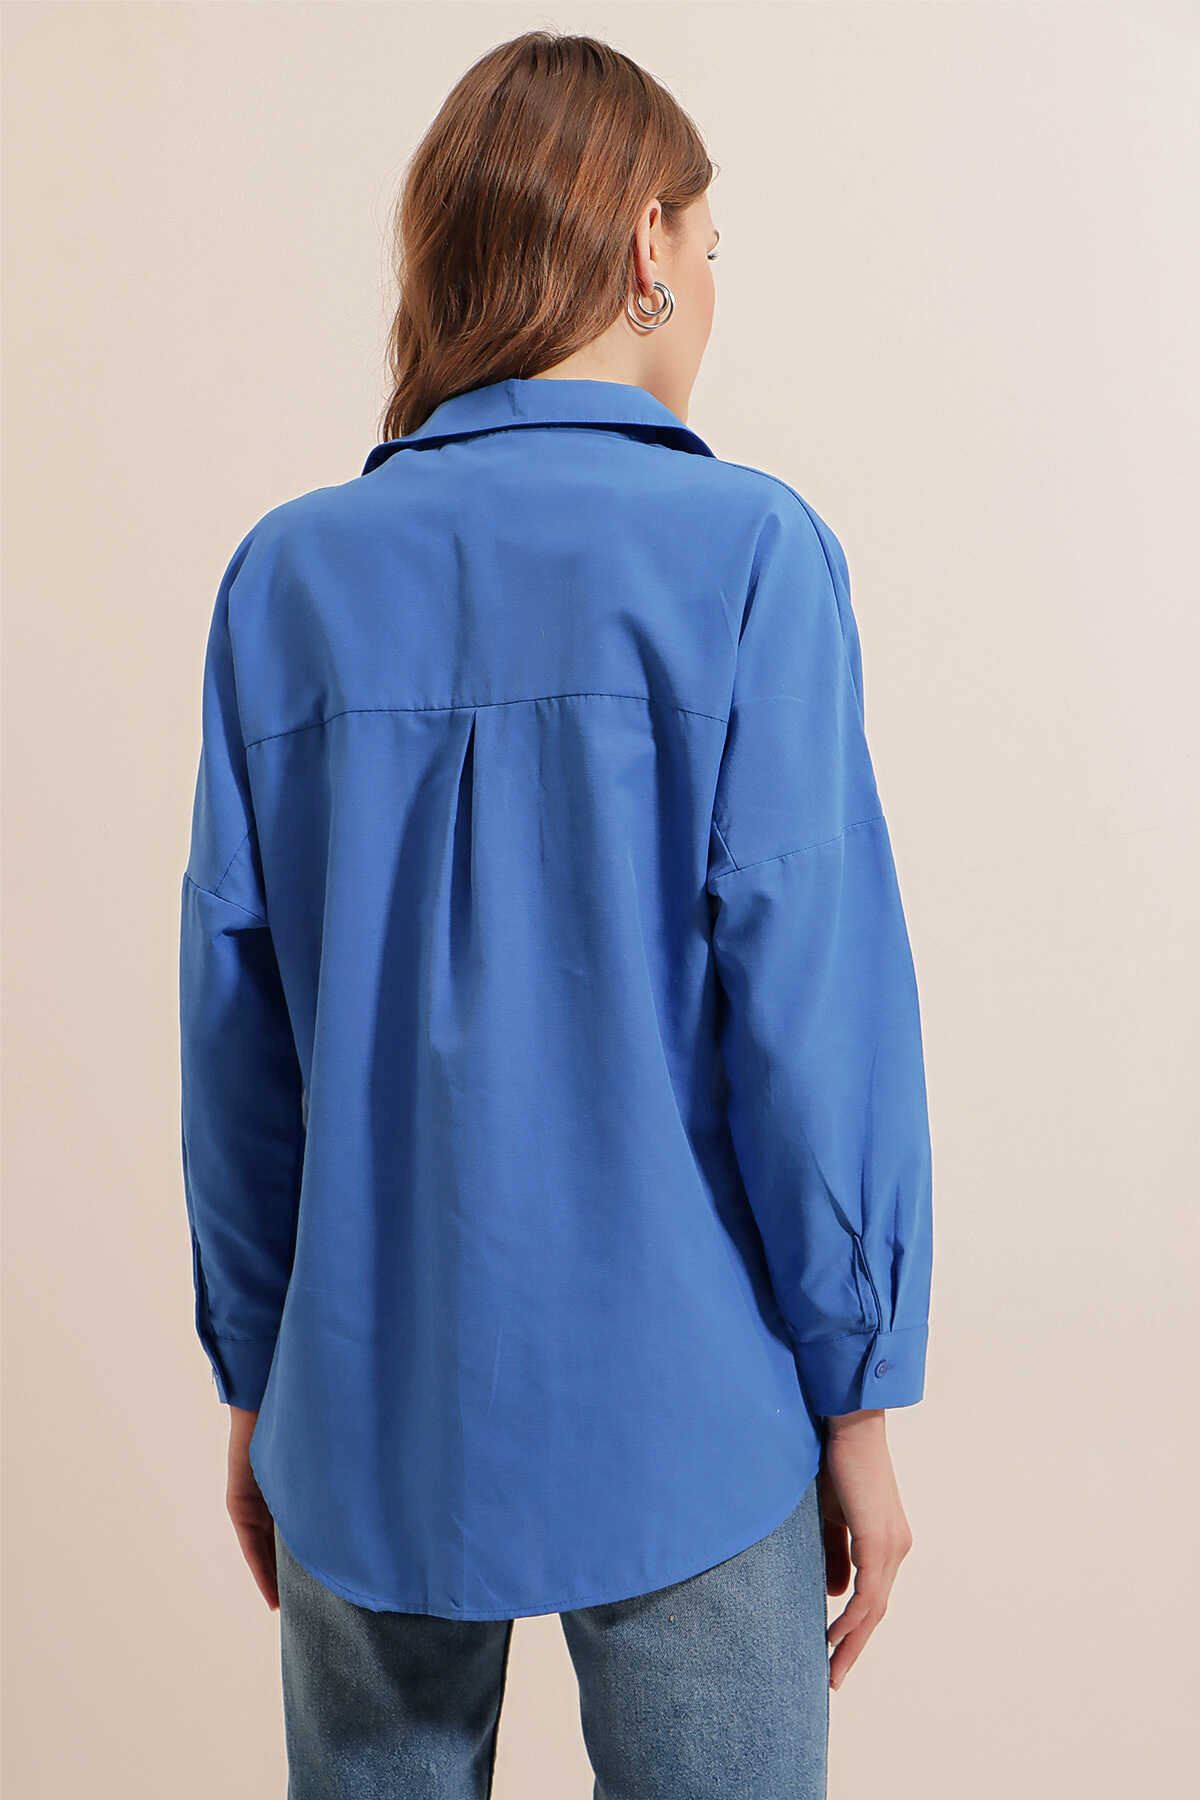 Giyinsen Kadın Mavi Gömlek - 24YM21000011